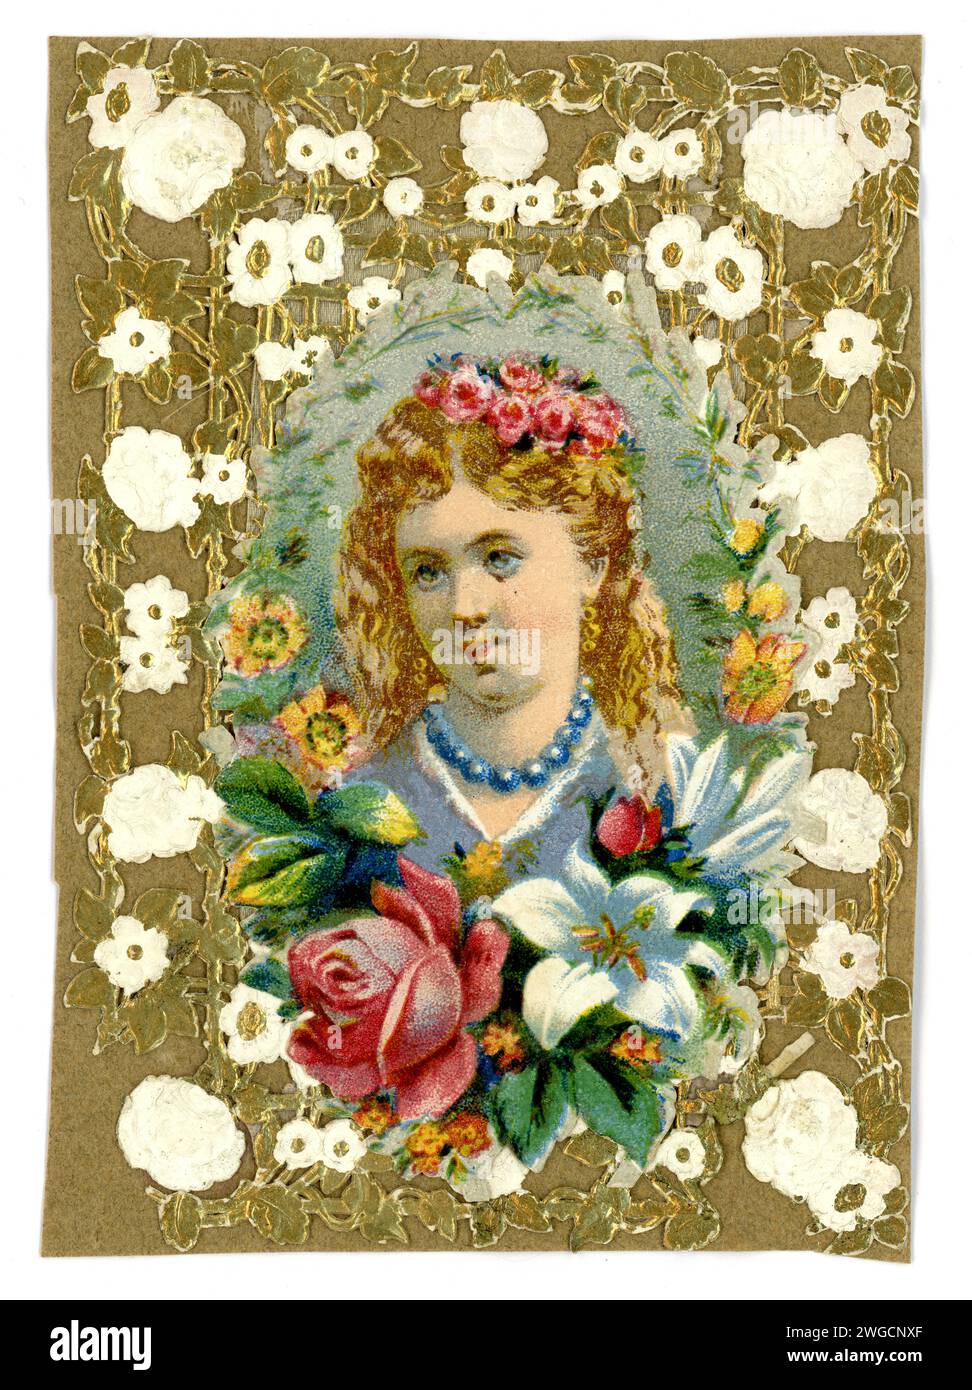 Originale viktorianische Valentinstag-Grußkarte mit Papierspitze. Die Botschaft ist der Love I Prize. Großbritannien um 1890. Papier auf der Rückseite bilden eine alte Alaun, wie auch die anderen Stockfoto